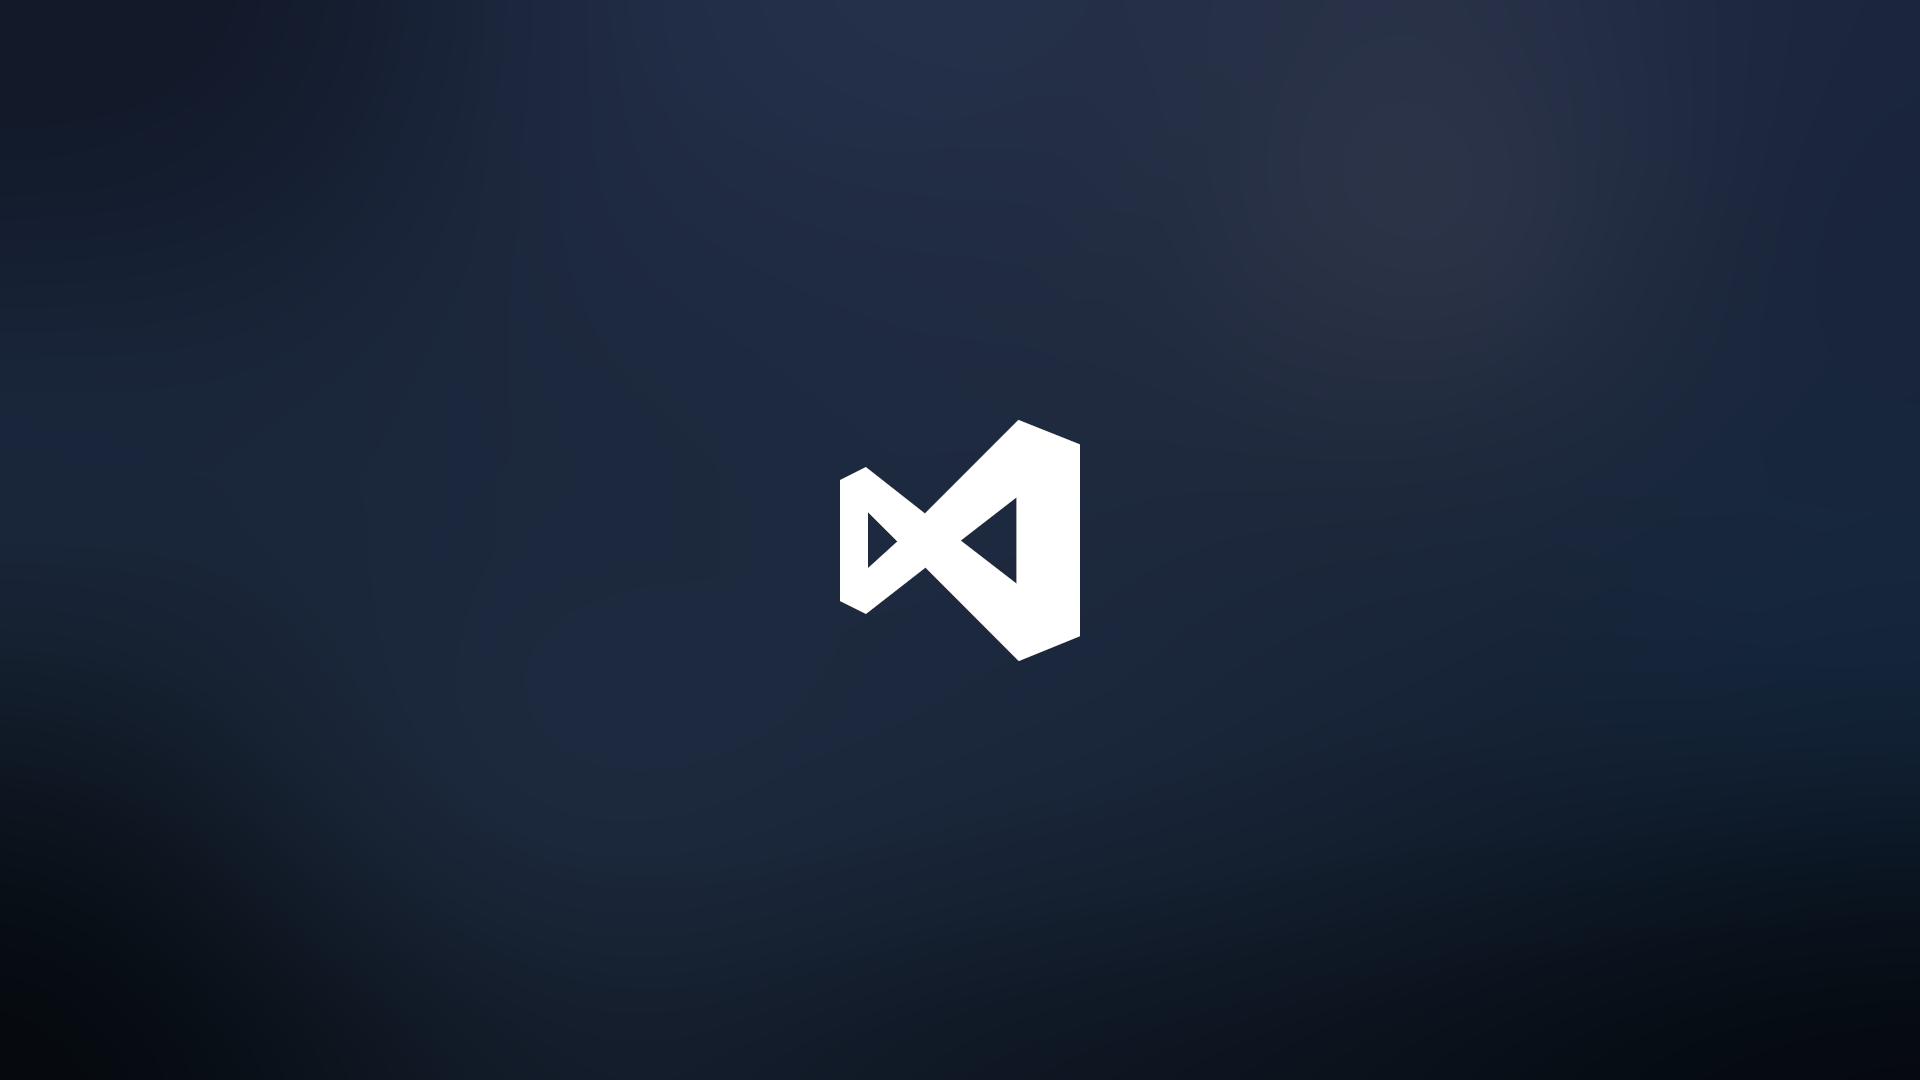 Hãy tìm hiểu thêm về những bức ảnh nền Visual Studio Code ấn tượng nhất! Chúng sẽ khiến bạn thấy vui vẻ và động lực hơn khi lập trình.